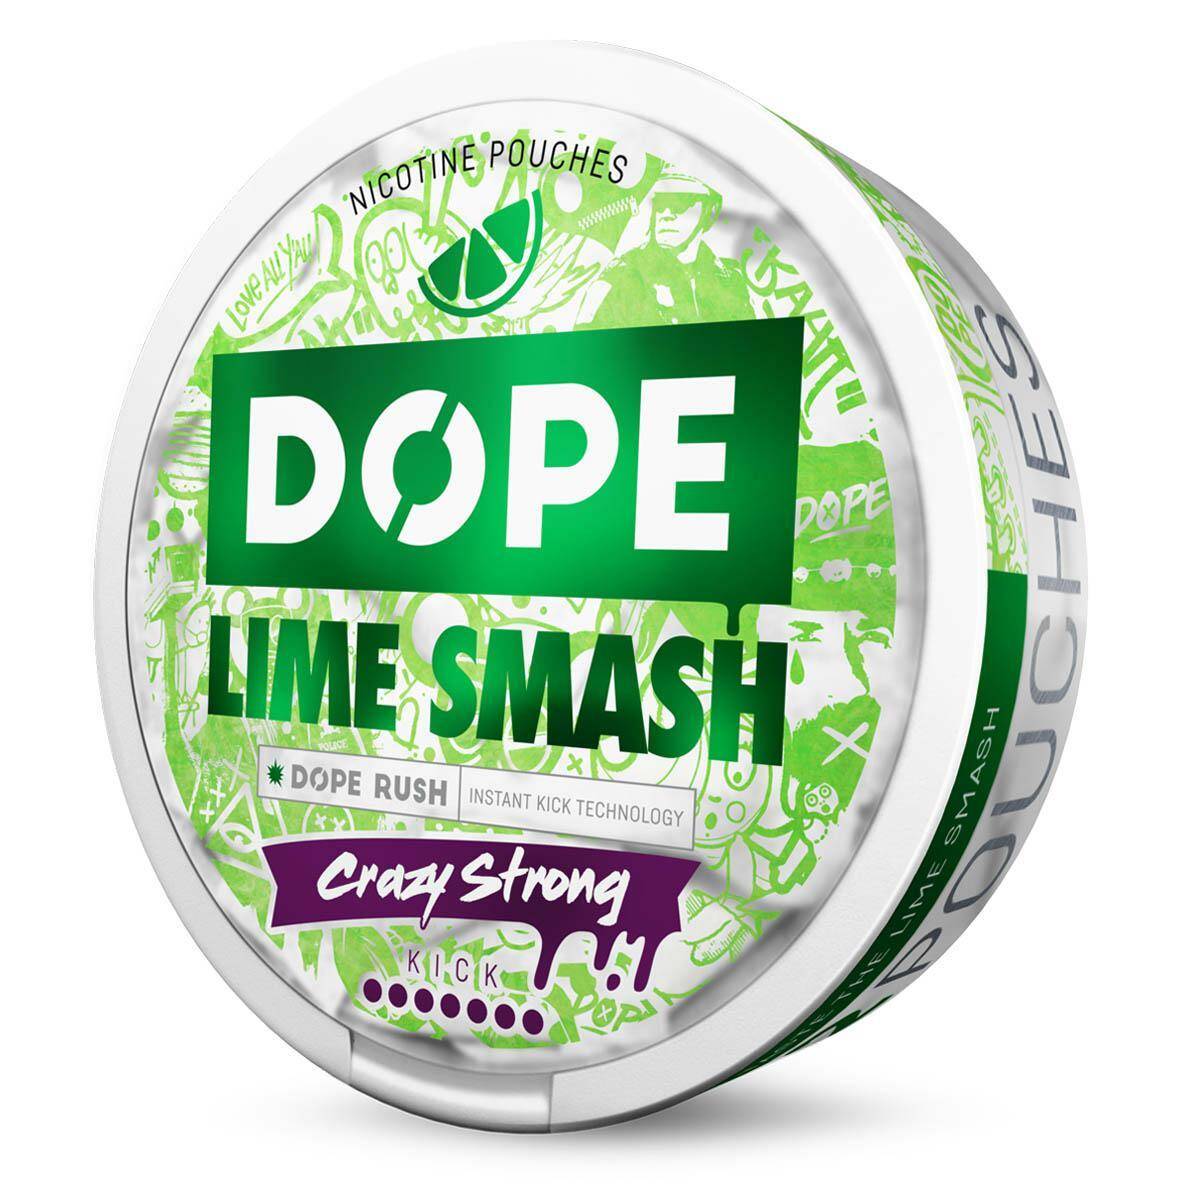 SNUS - Saszetki nikotynowe DOPE - Lime Smash 28,5mg/g (Zdjęcie 2)